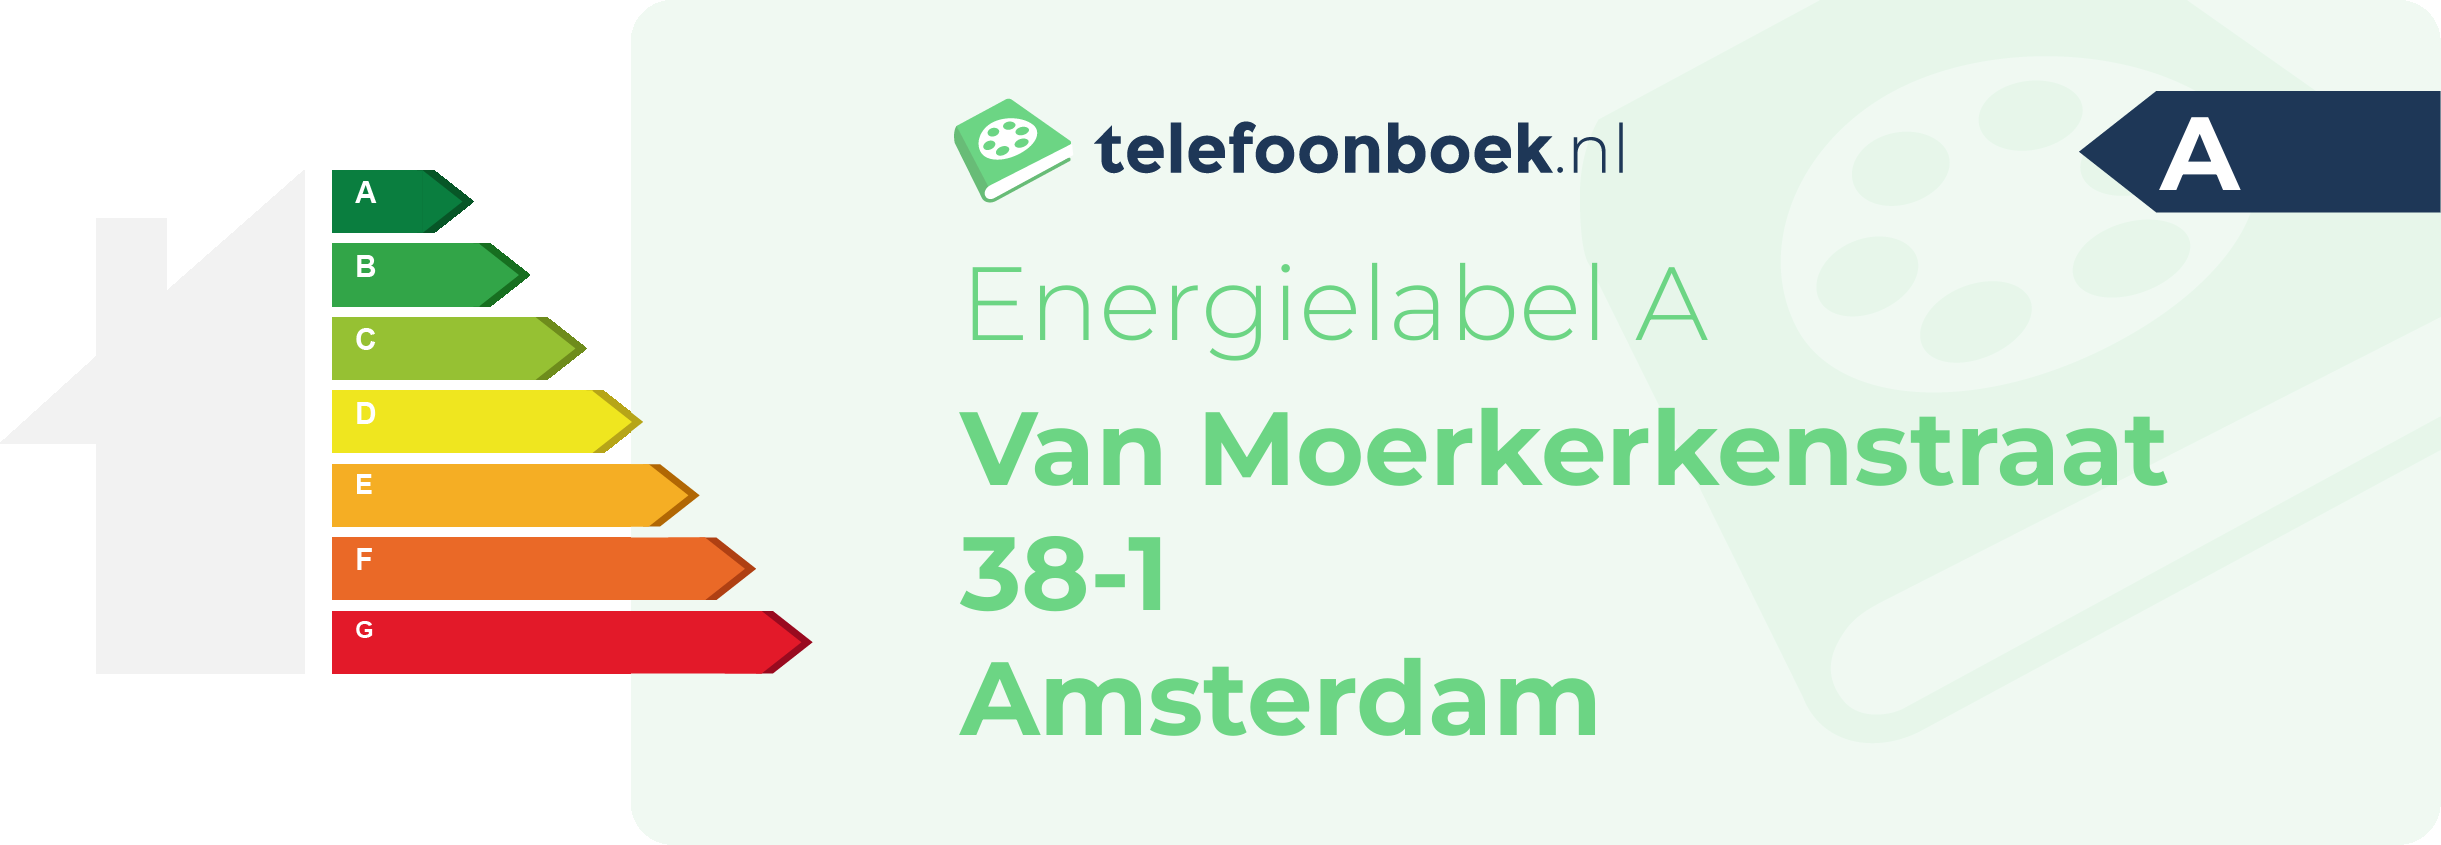 Energielabel Van Moerkerkenstraat 38-1 Amsterdam